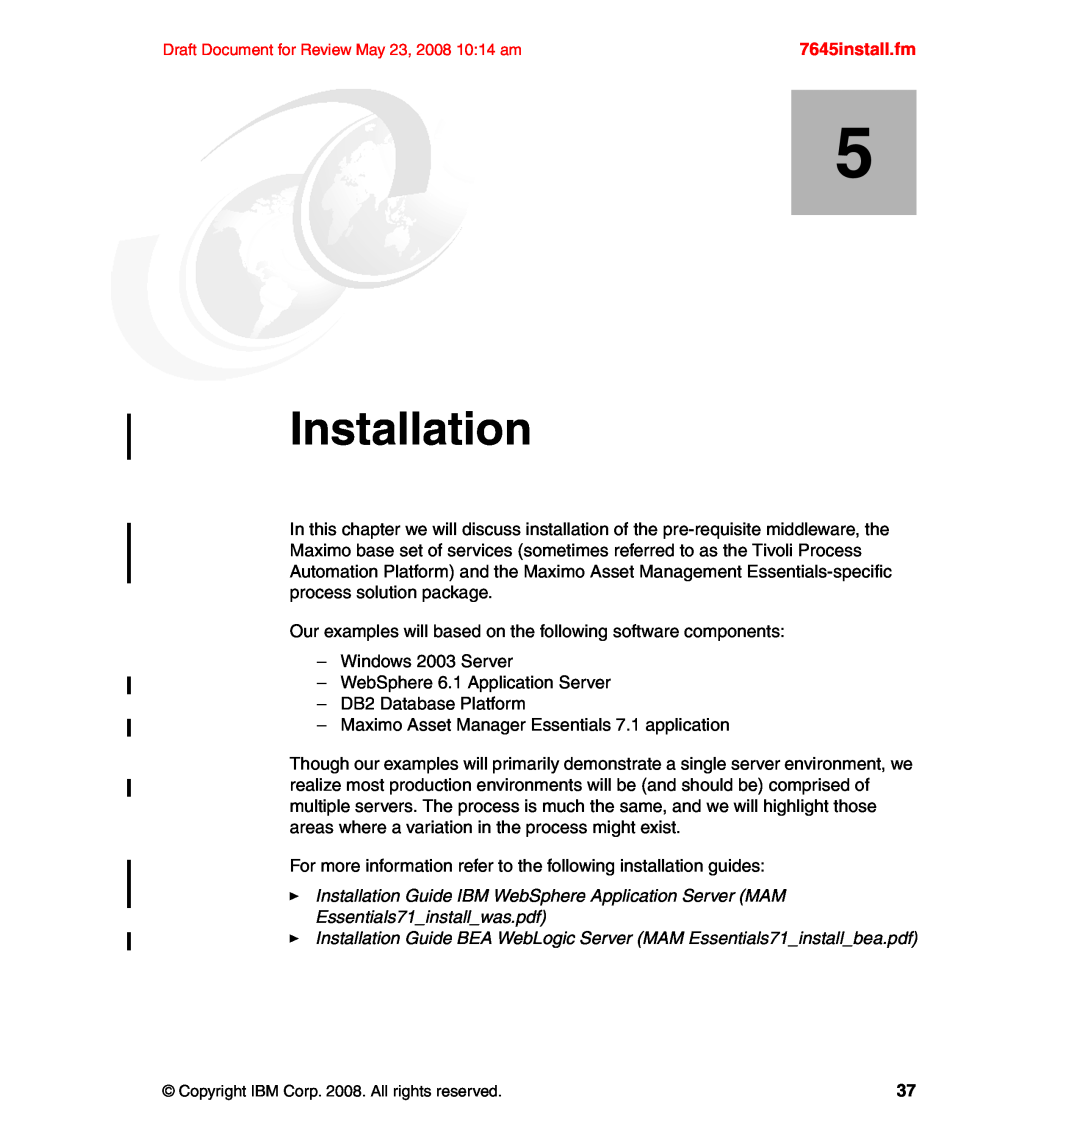 IBM SG24-7645-00 manual Installation, 7645install.fm 